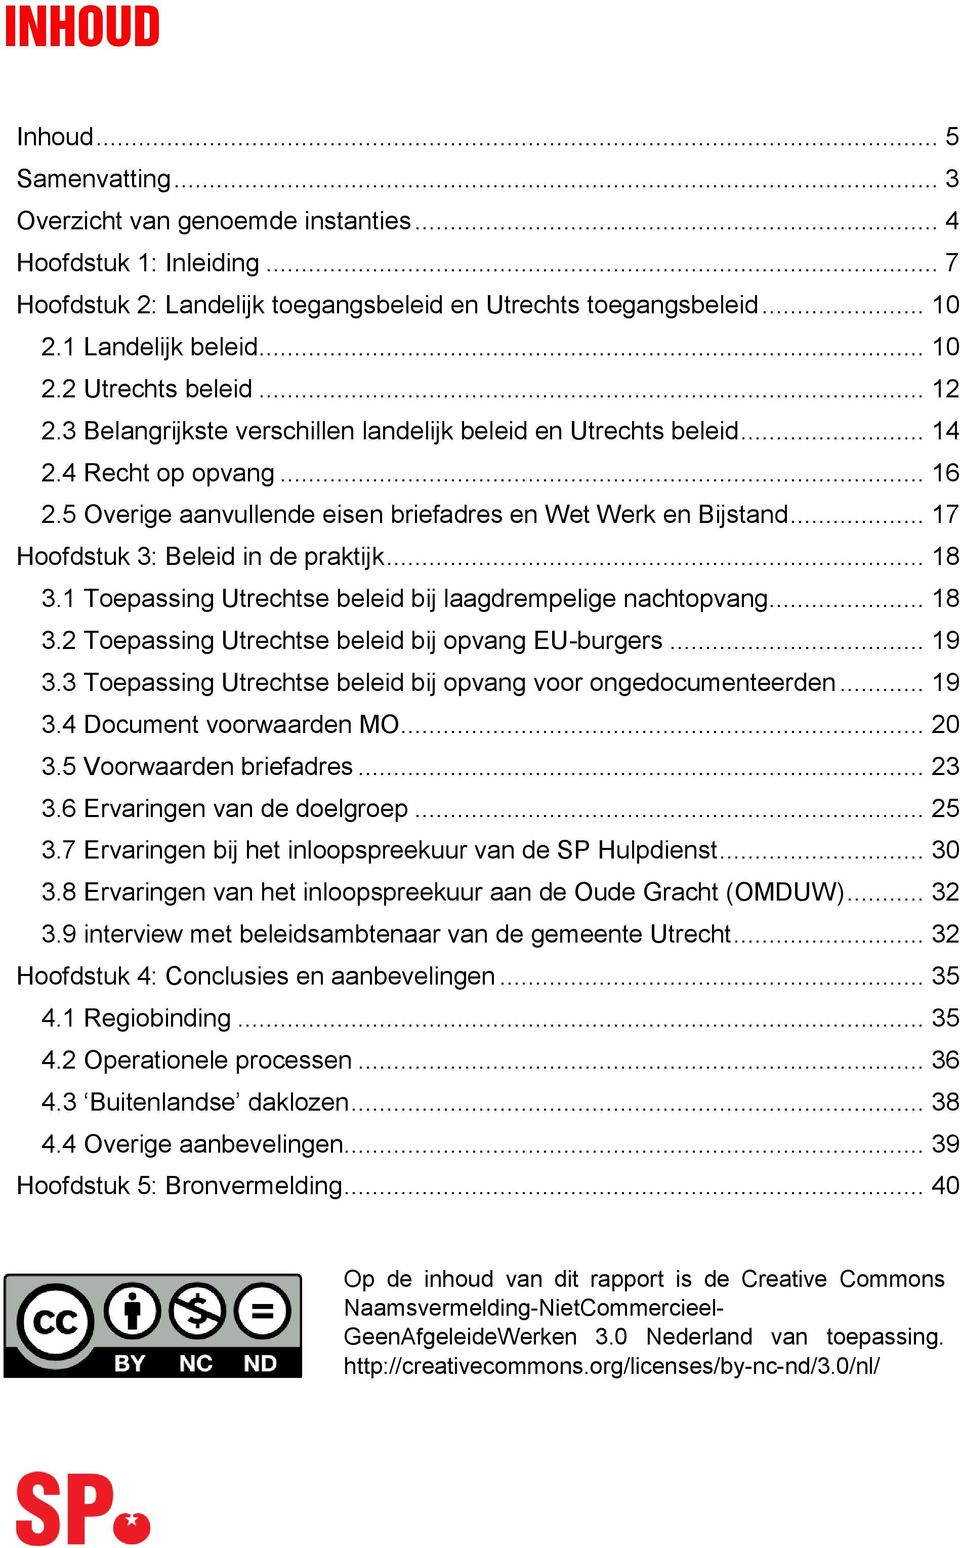 .. 17 Hoofdstuk 3: Beleid in de praktijk... 18 3.1 Toepassing Utrechtse beleid bij laagdrempelige nachtopvang... 18 3.2 Toepassing Utrechtse beleid bij opvang EU-burgers... 19 3.